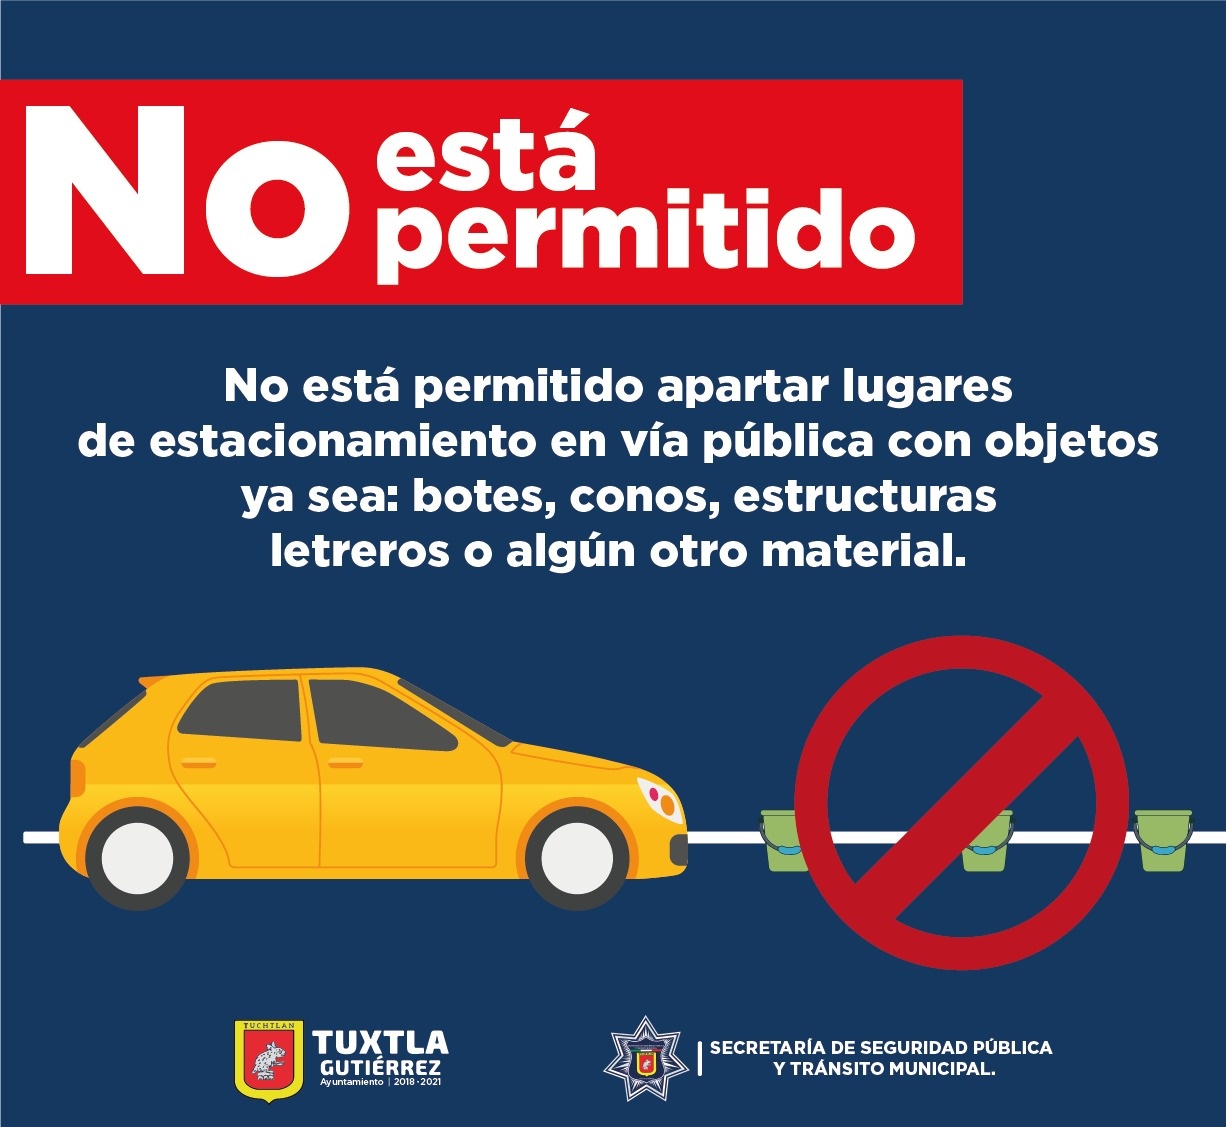 Colocar objetos para apartar estacionamiento, no se permite y puede ser sancionable. SSPyTM